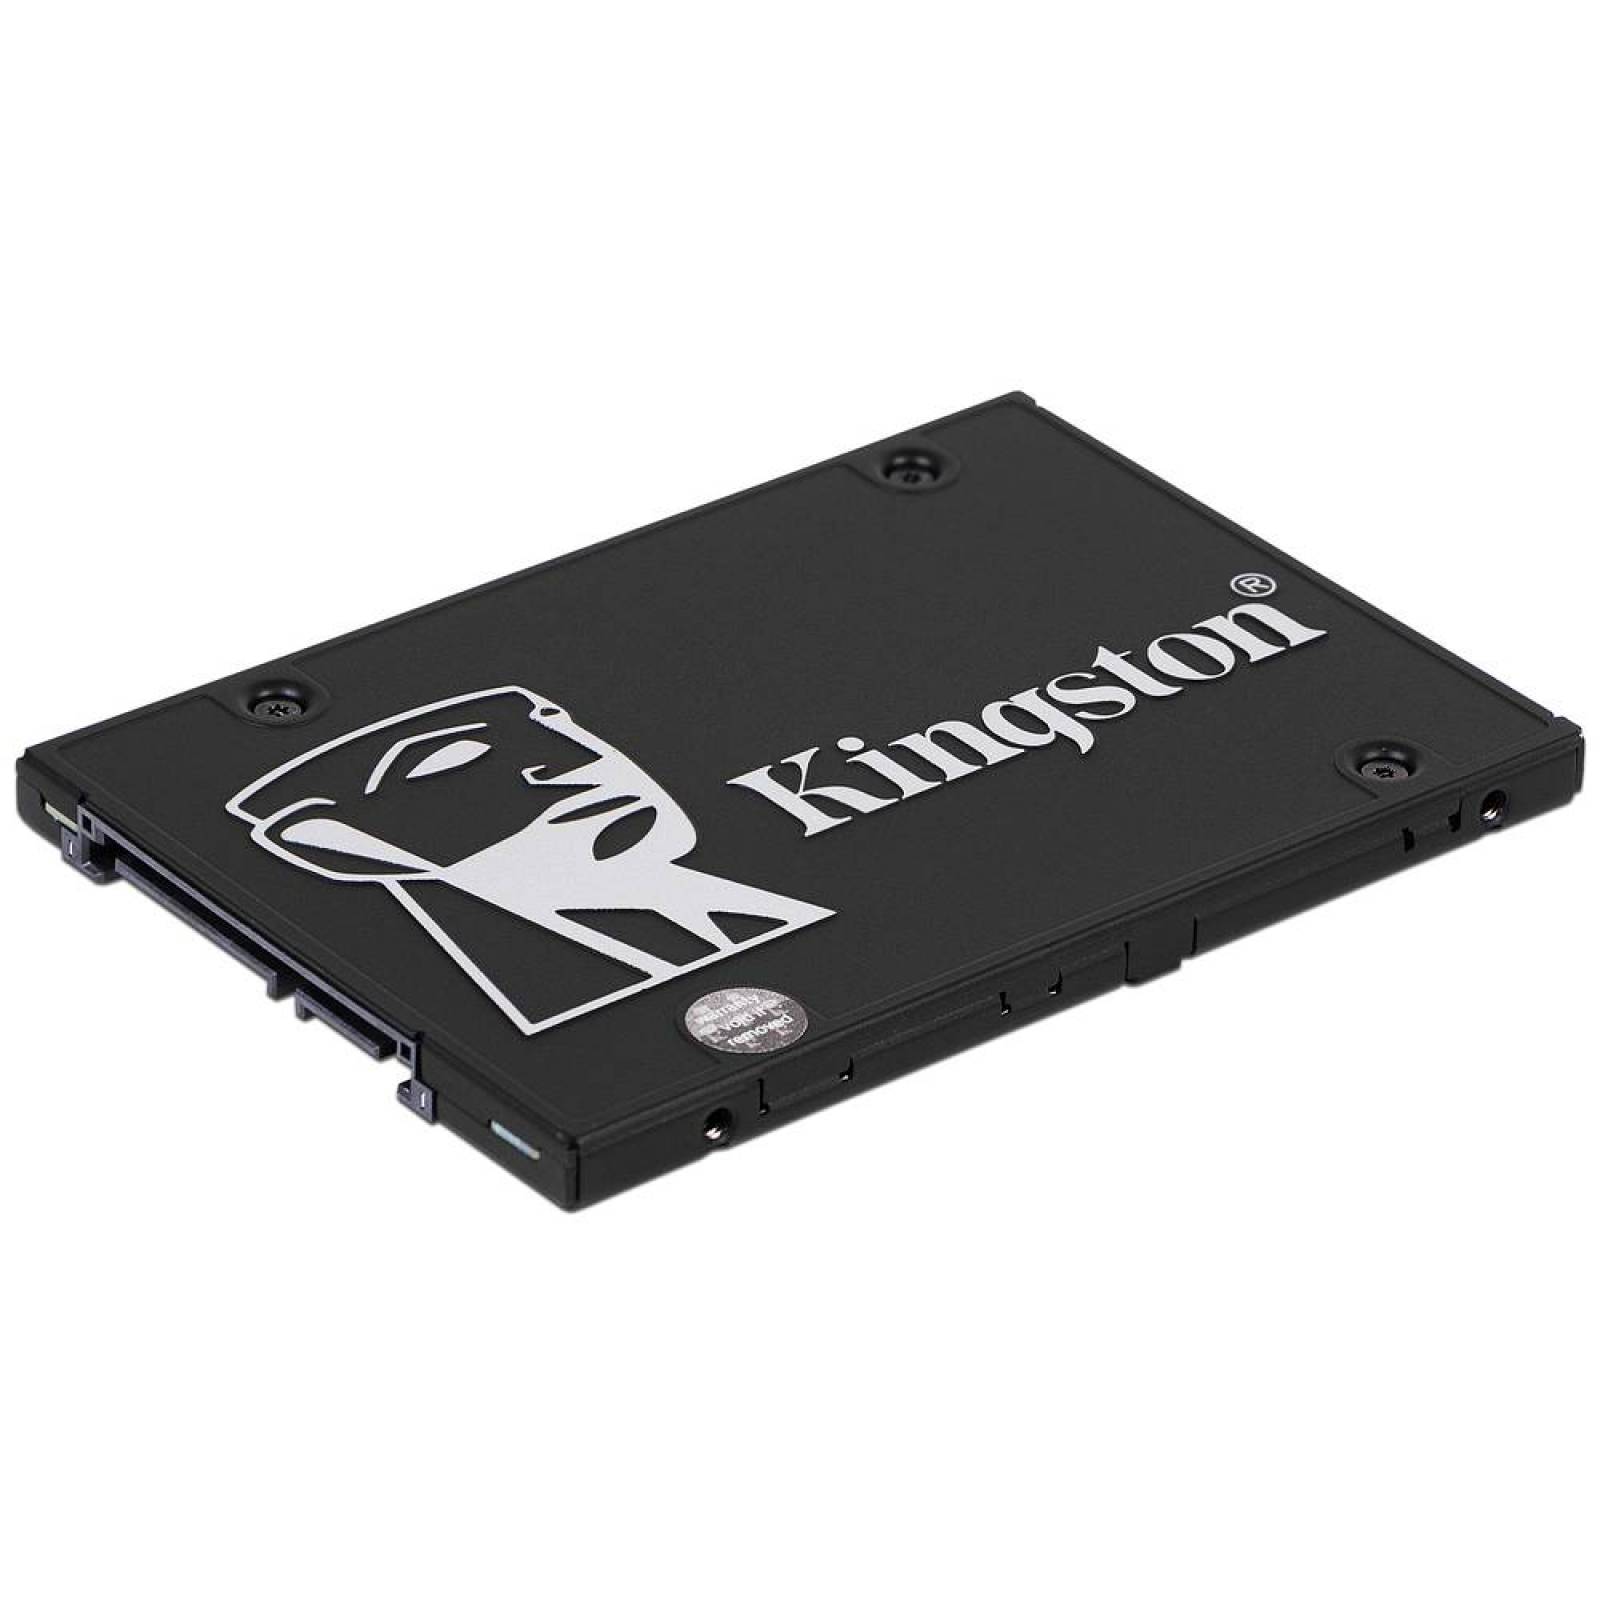 Unidad de estado sÃ³lido Kingston KC600 de 512GB 2.5 pulgadas SATA III 6Gb/s.